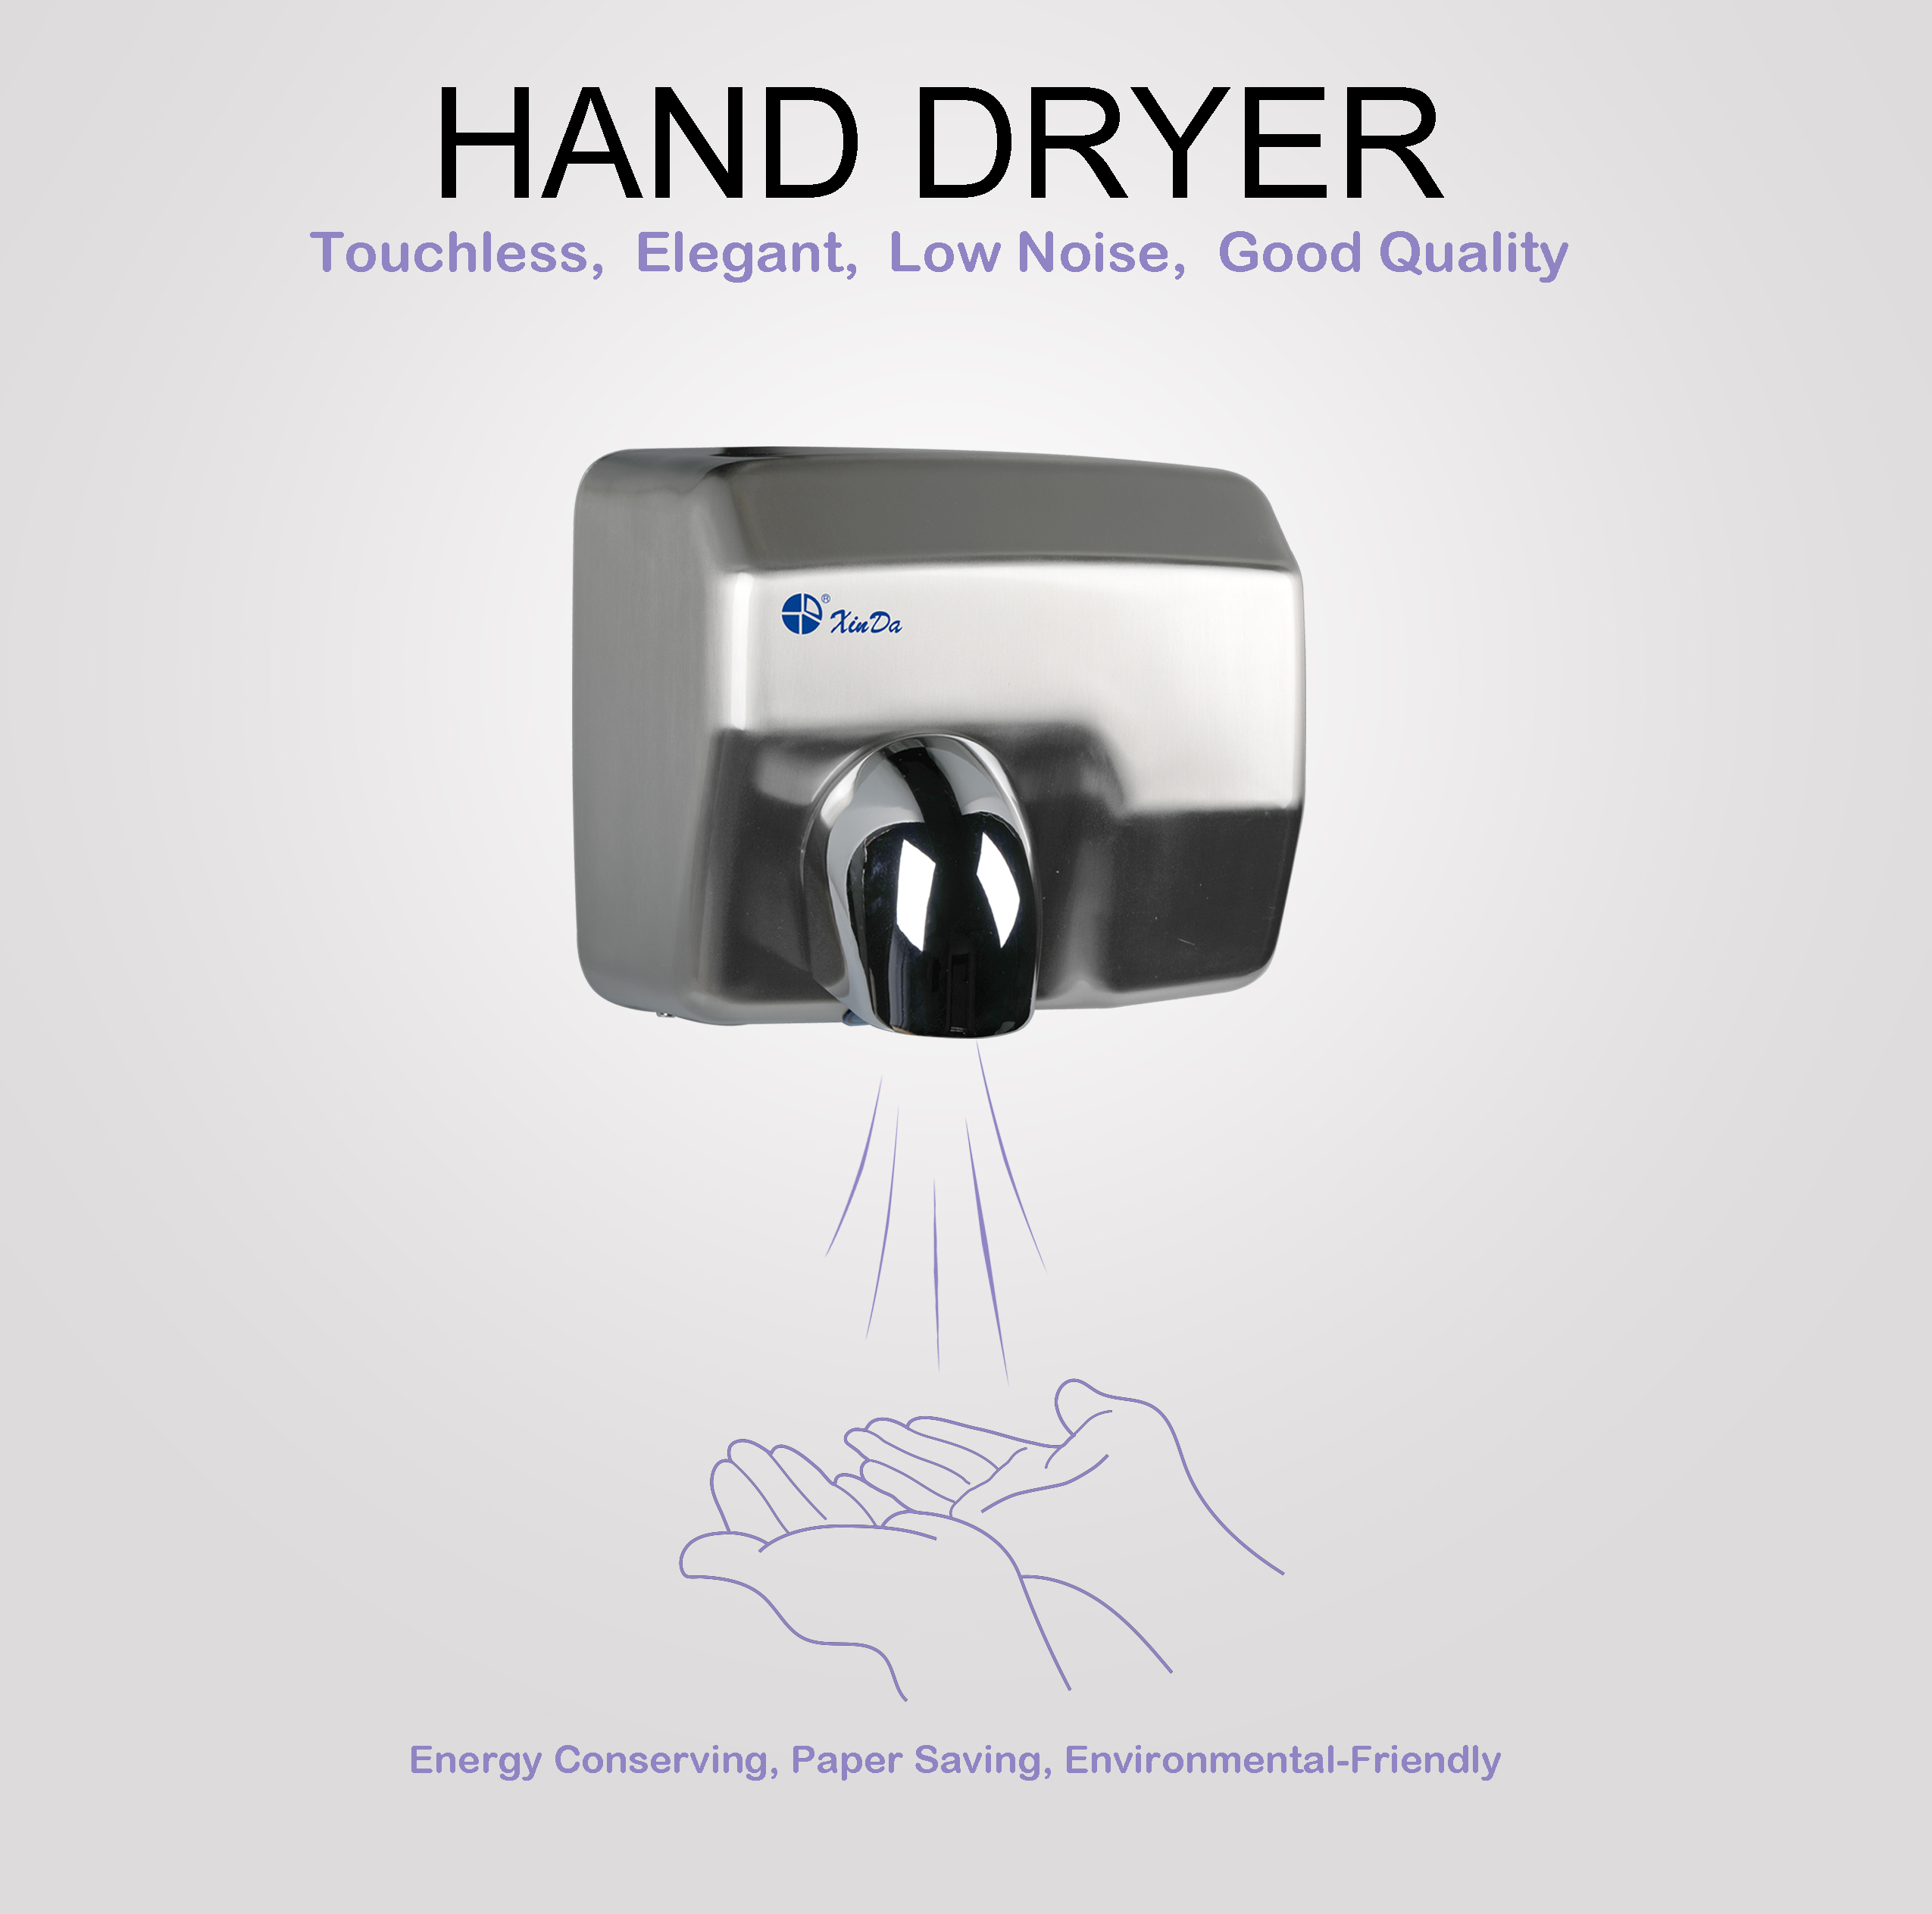 XinDa GSQ250 Silver Factory trực tiếp đảm bảo chất lượng làm khô nhanh máy sấy tay bằng thép không gỉ Máy sấy tay bằng điện